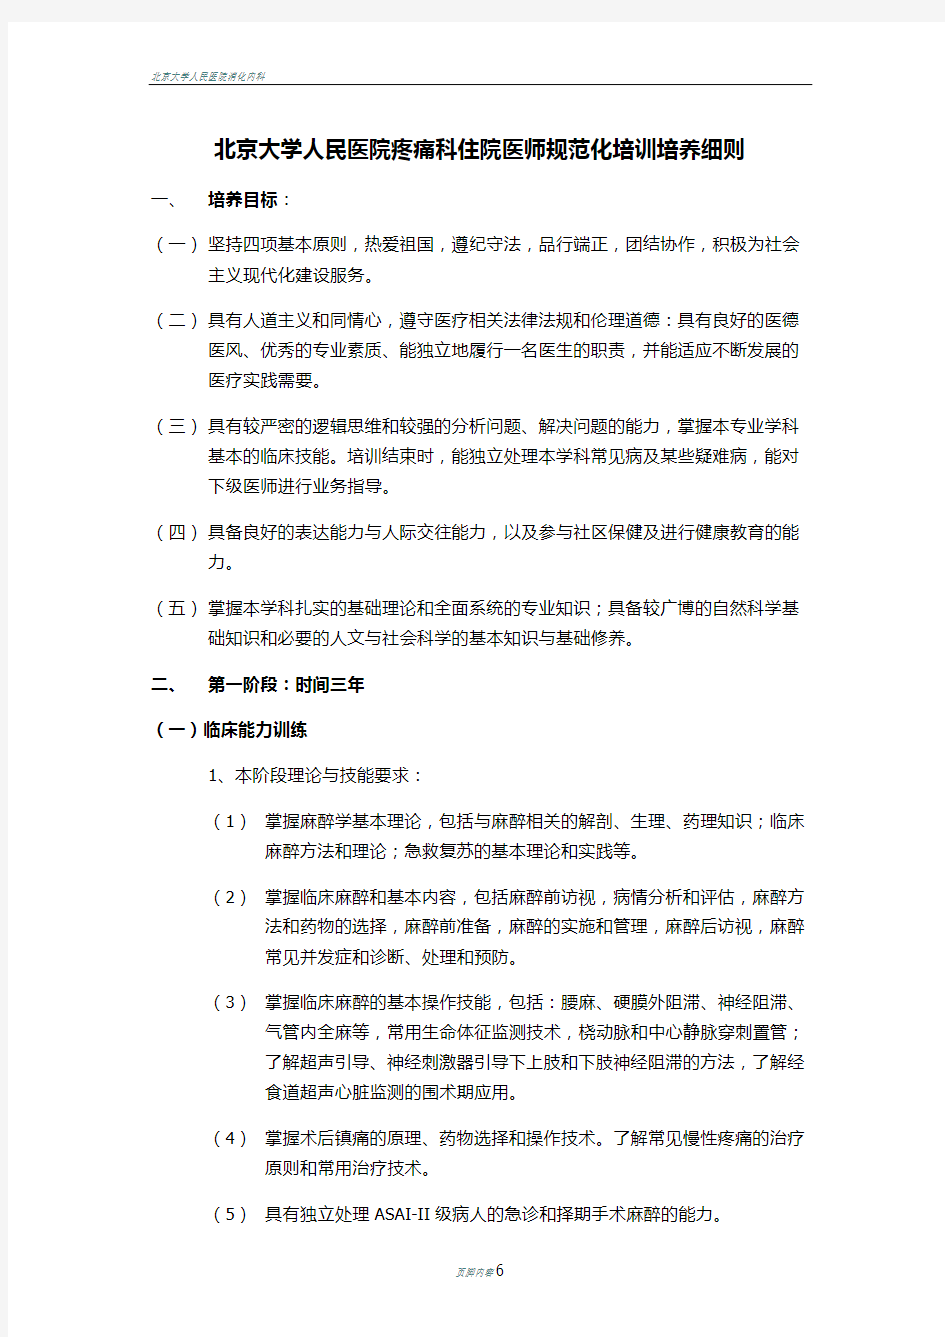 北京大学人民医院疼痛科住院医师规范化培训培养细则